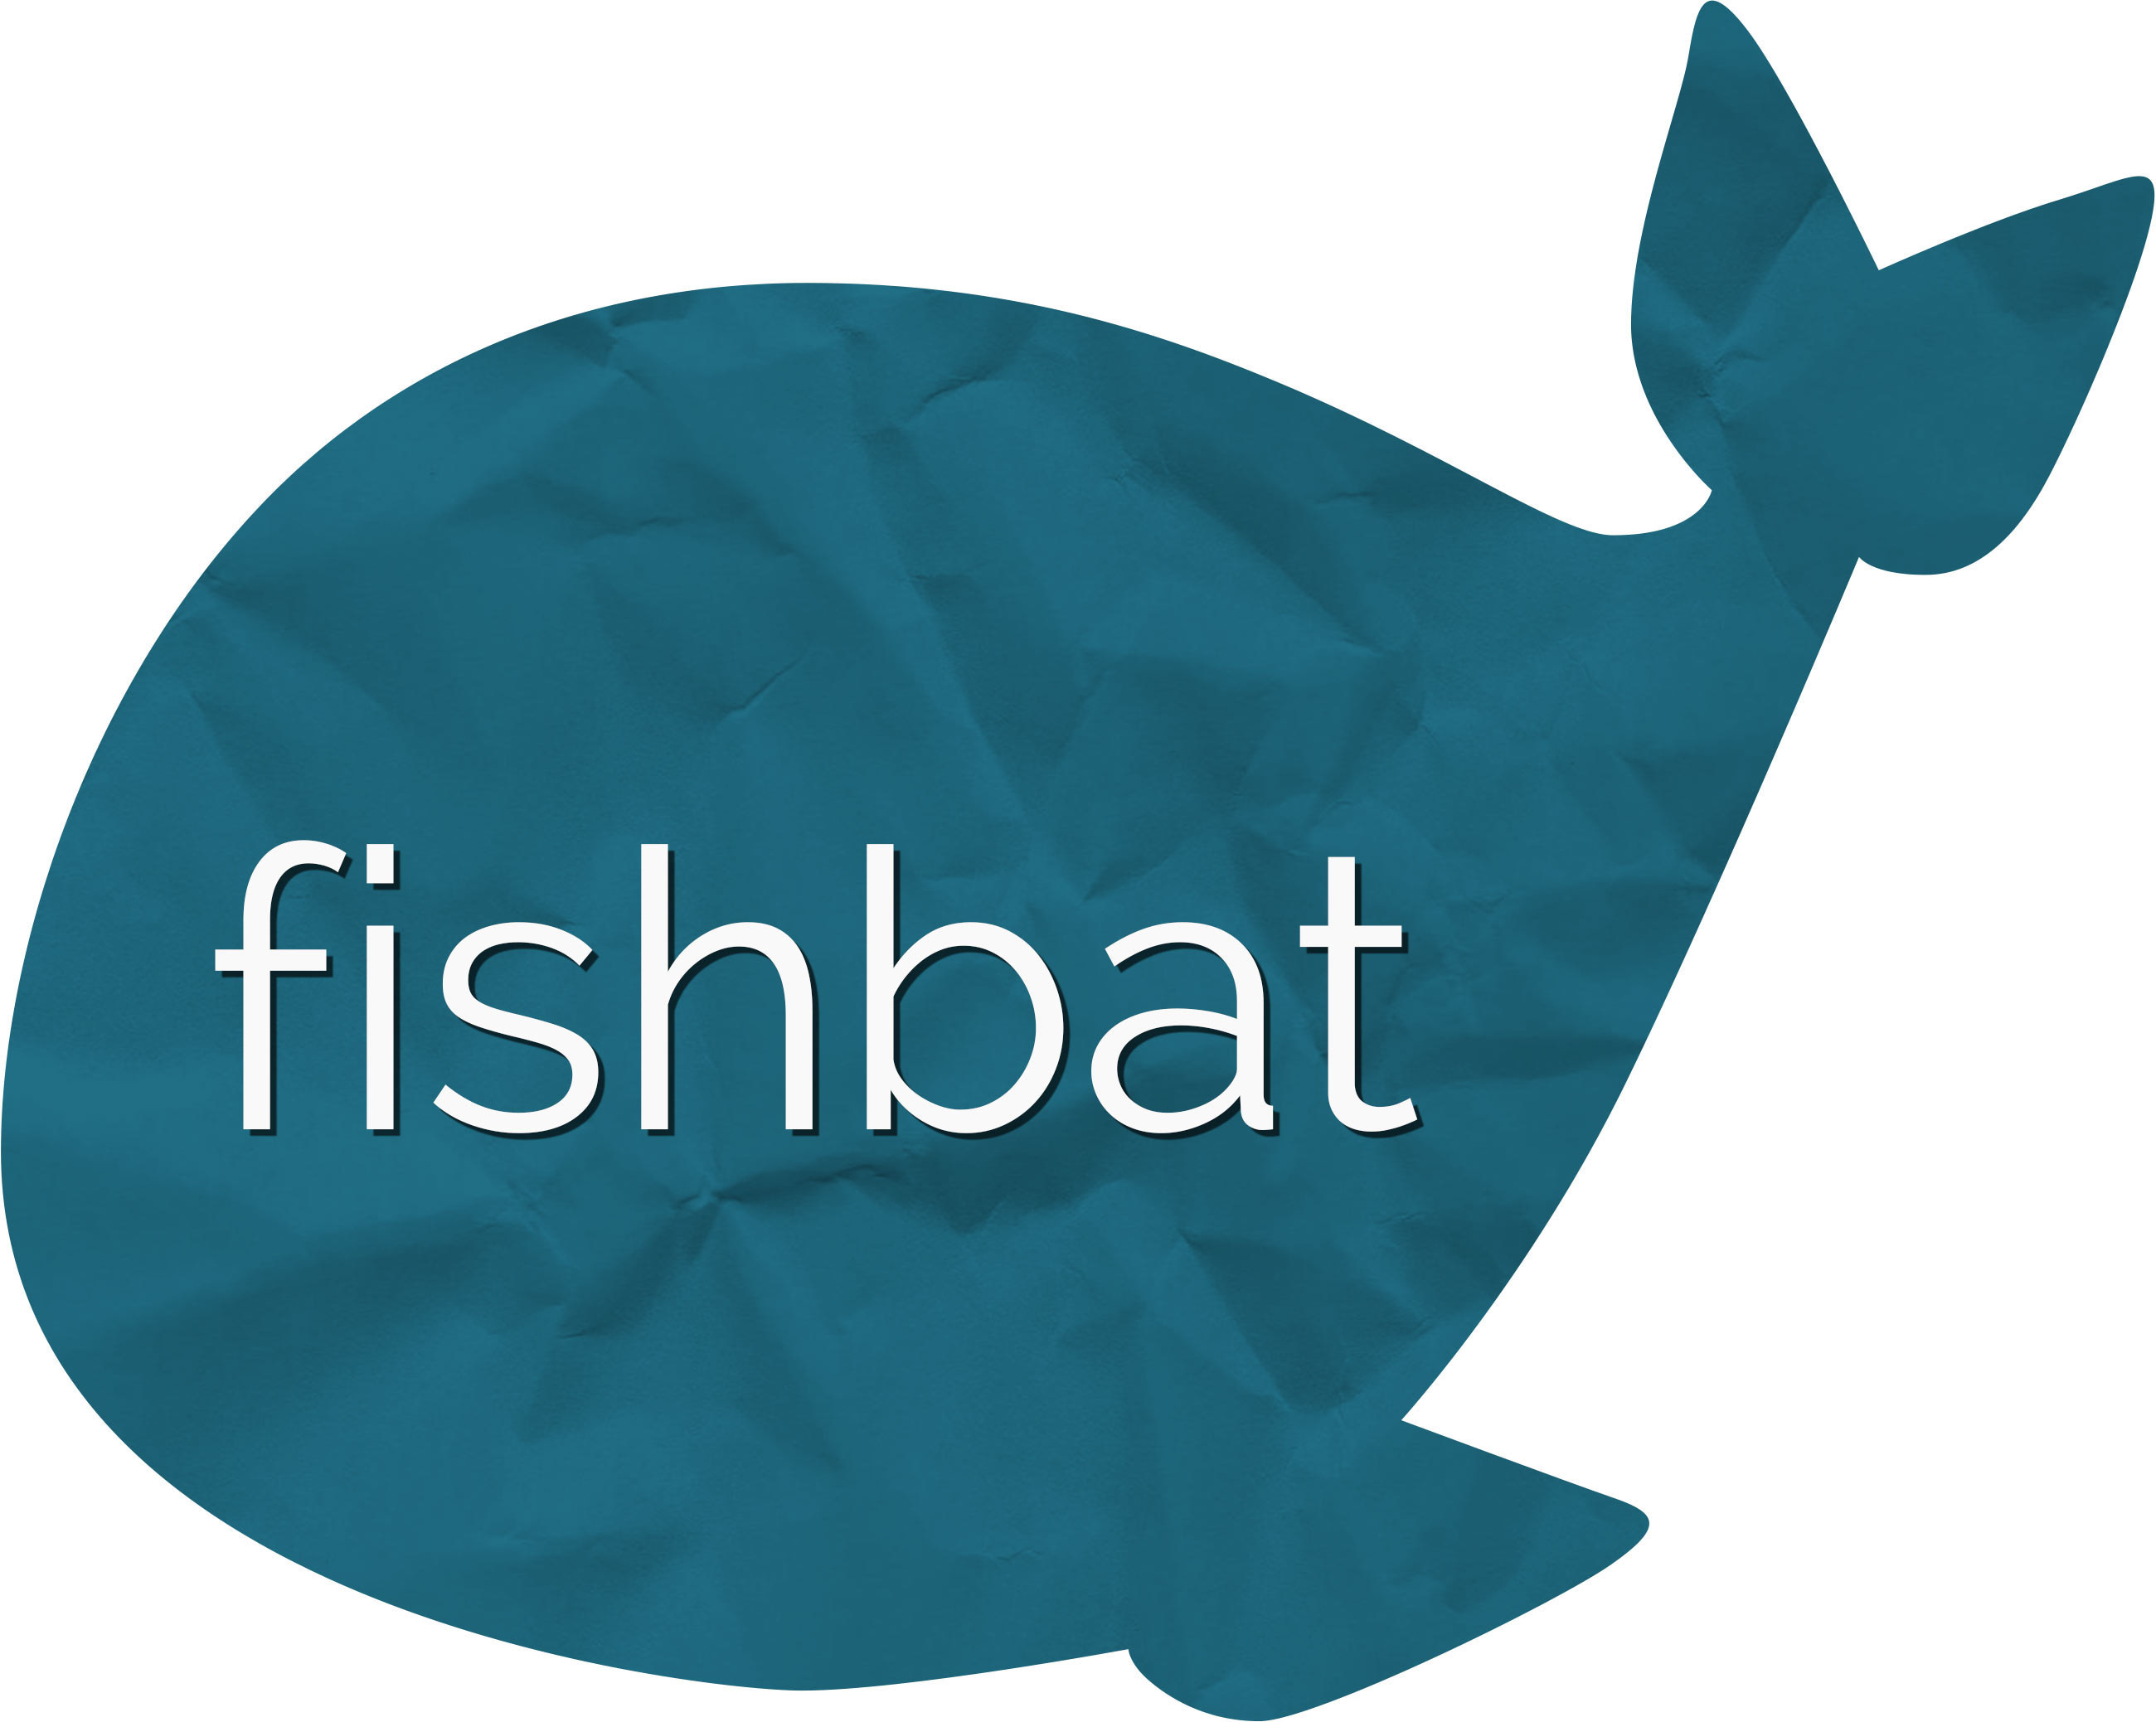 fishbat